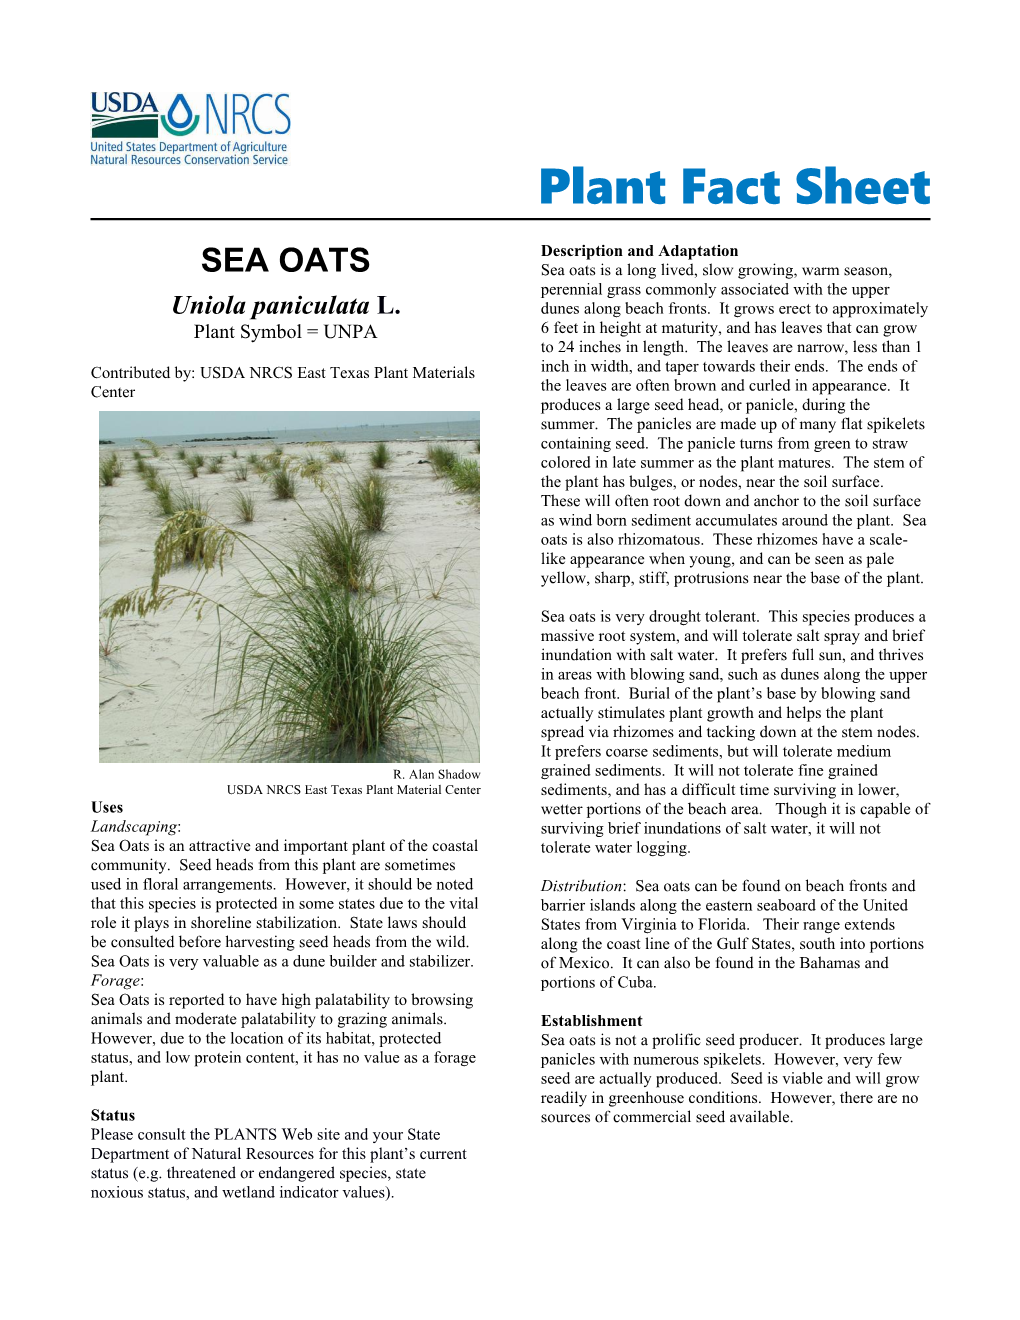 Sea Oats Plant Fact Sheet